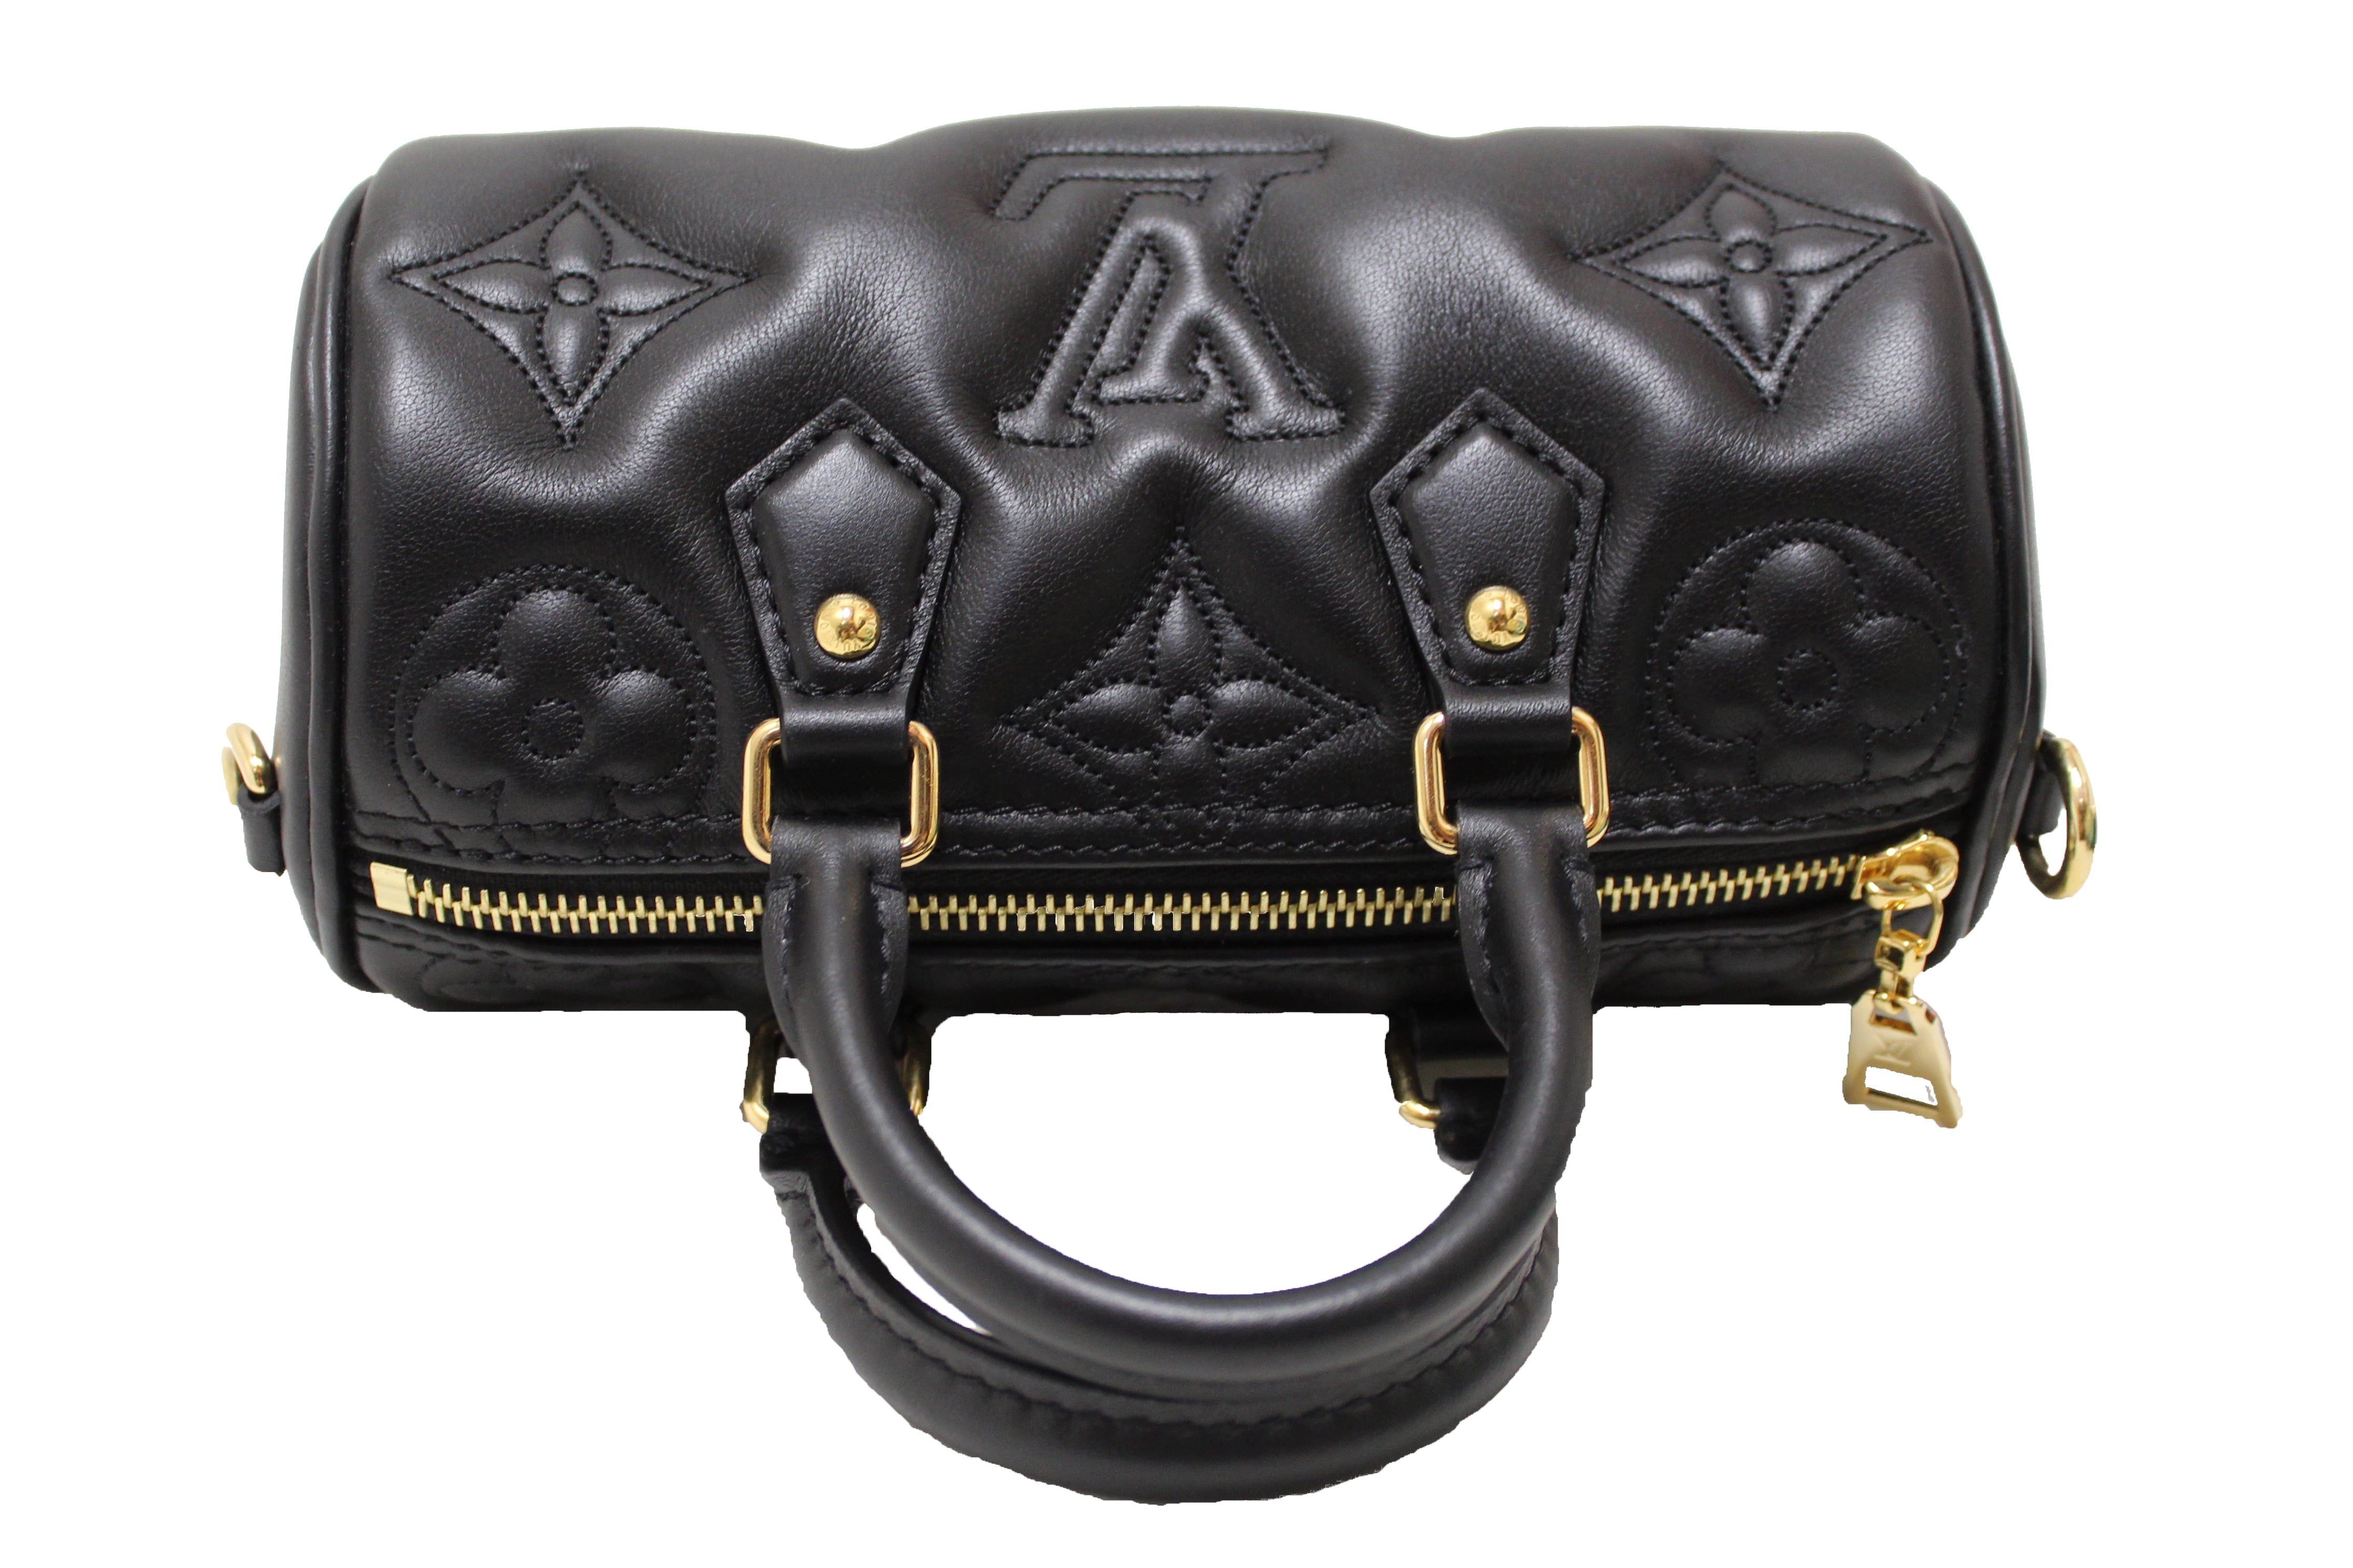 Louis Vuitton Pop My Heart Pouch Bag Bubblegram Leather For Sale